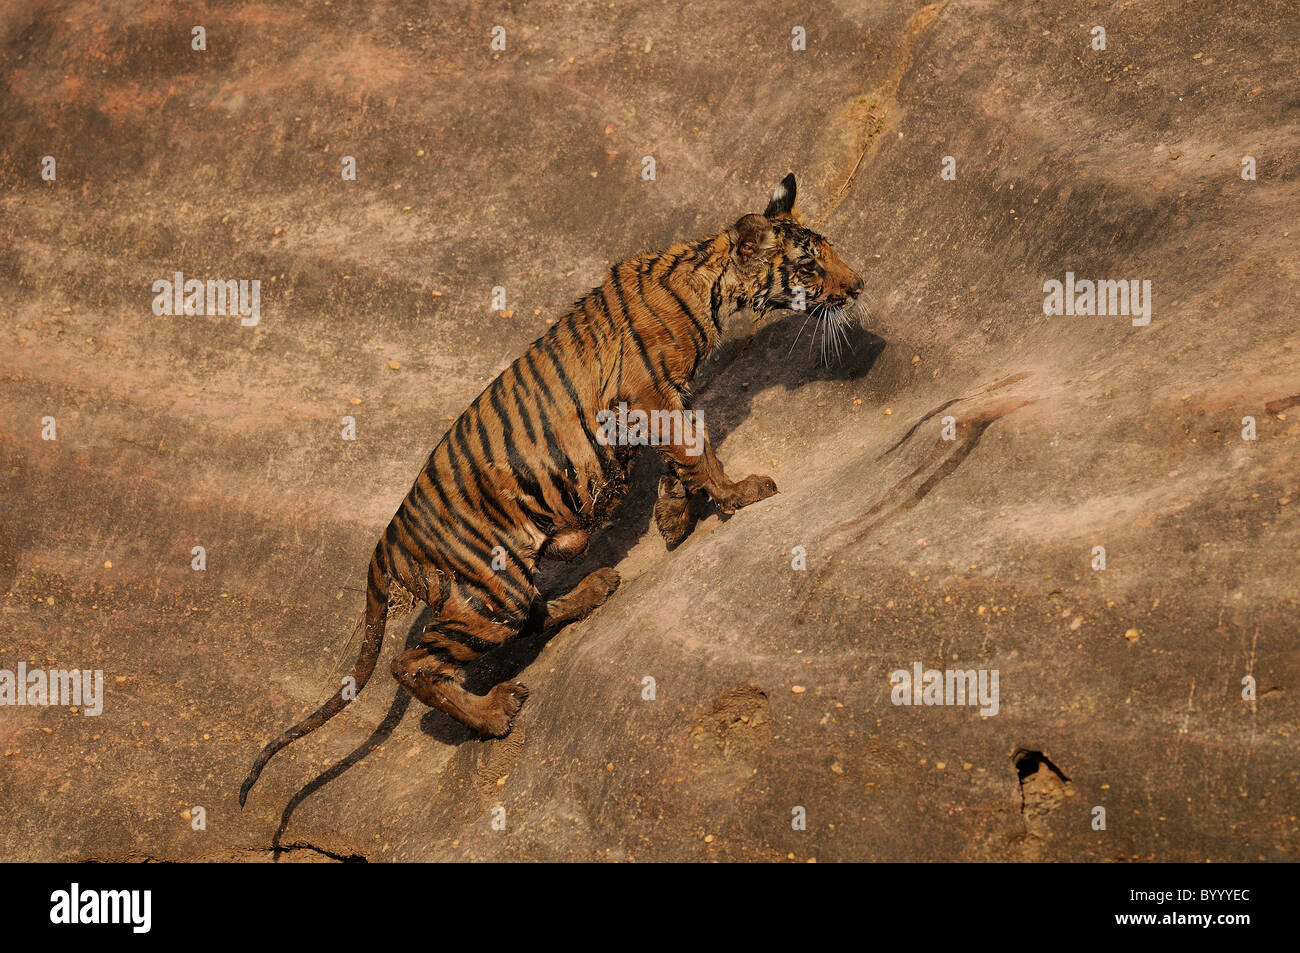 Tigre du Bengale femelle cub, humide de jouer dans un trou d'eau, grimper un rocher sur son avantage dans la Réserve de tigres de Bandhavgarh, Inde Banque D'Images